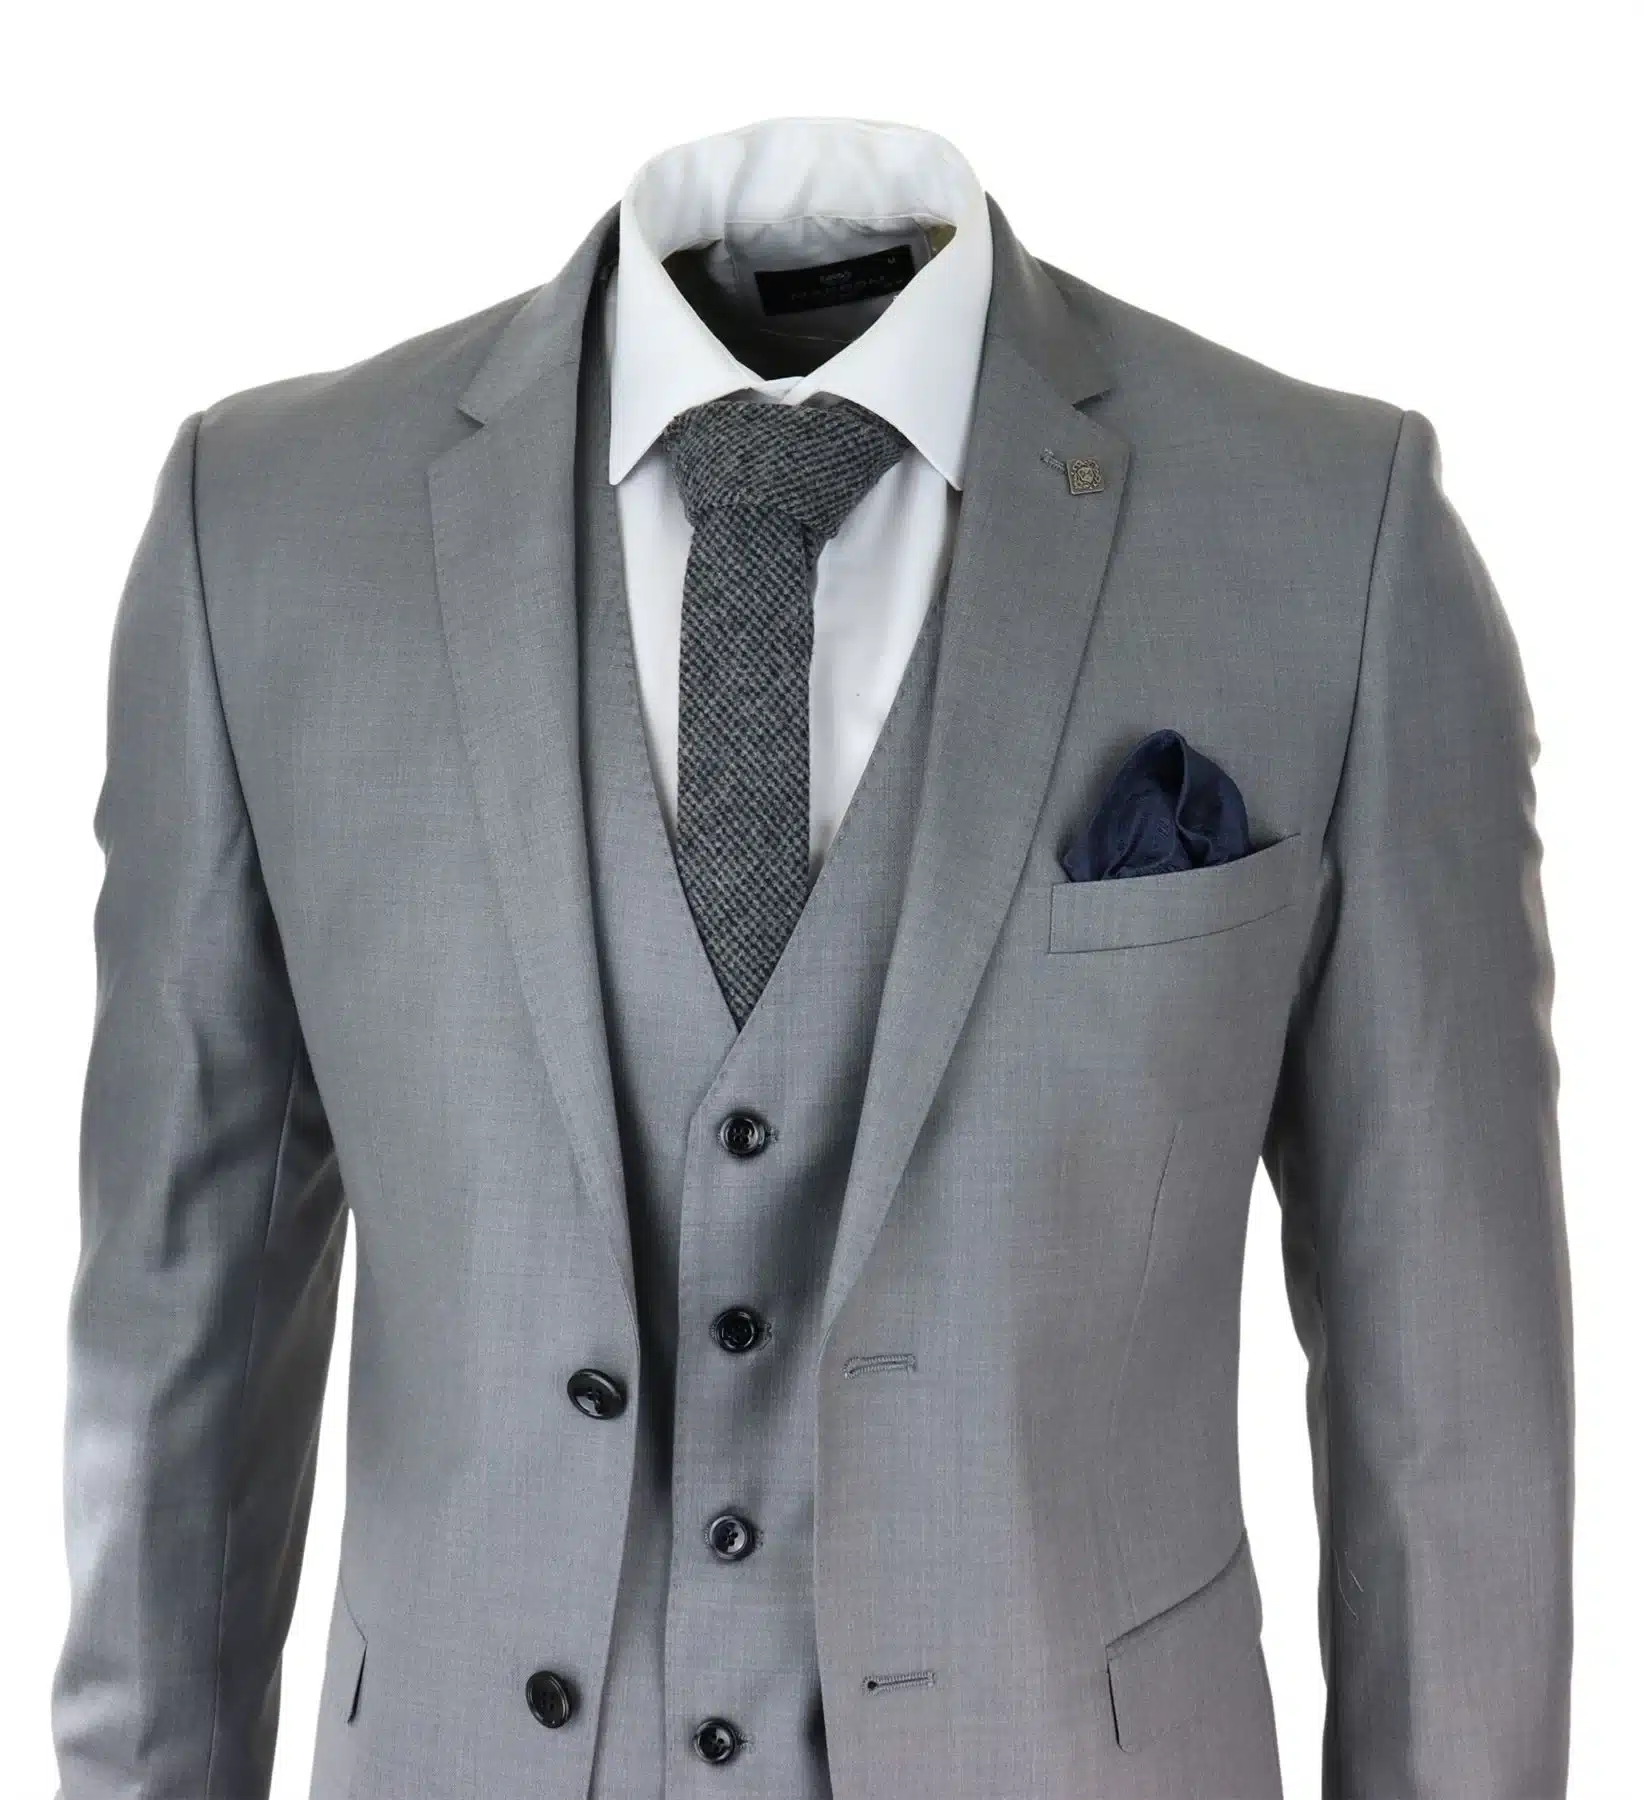 Grey & Black Vest Slim-Fit Italian Cut Suit - Men's Suit - Grey 3 Piece Suit  - Wedding Party Suit - Grey Slim-Fi… | Grey slim fit suit, Grey suit men,  Slim fit suit